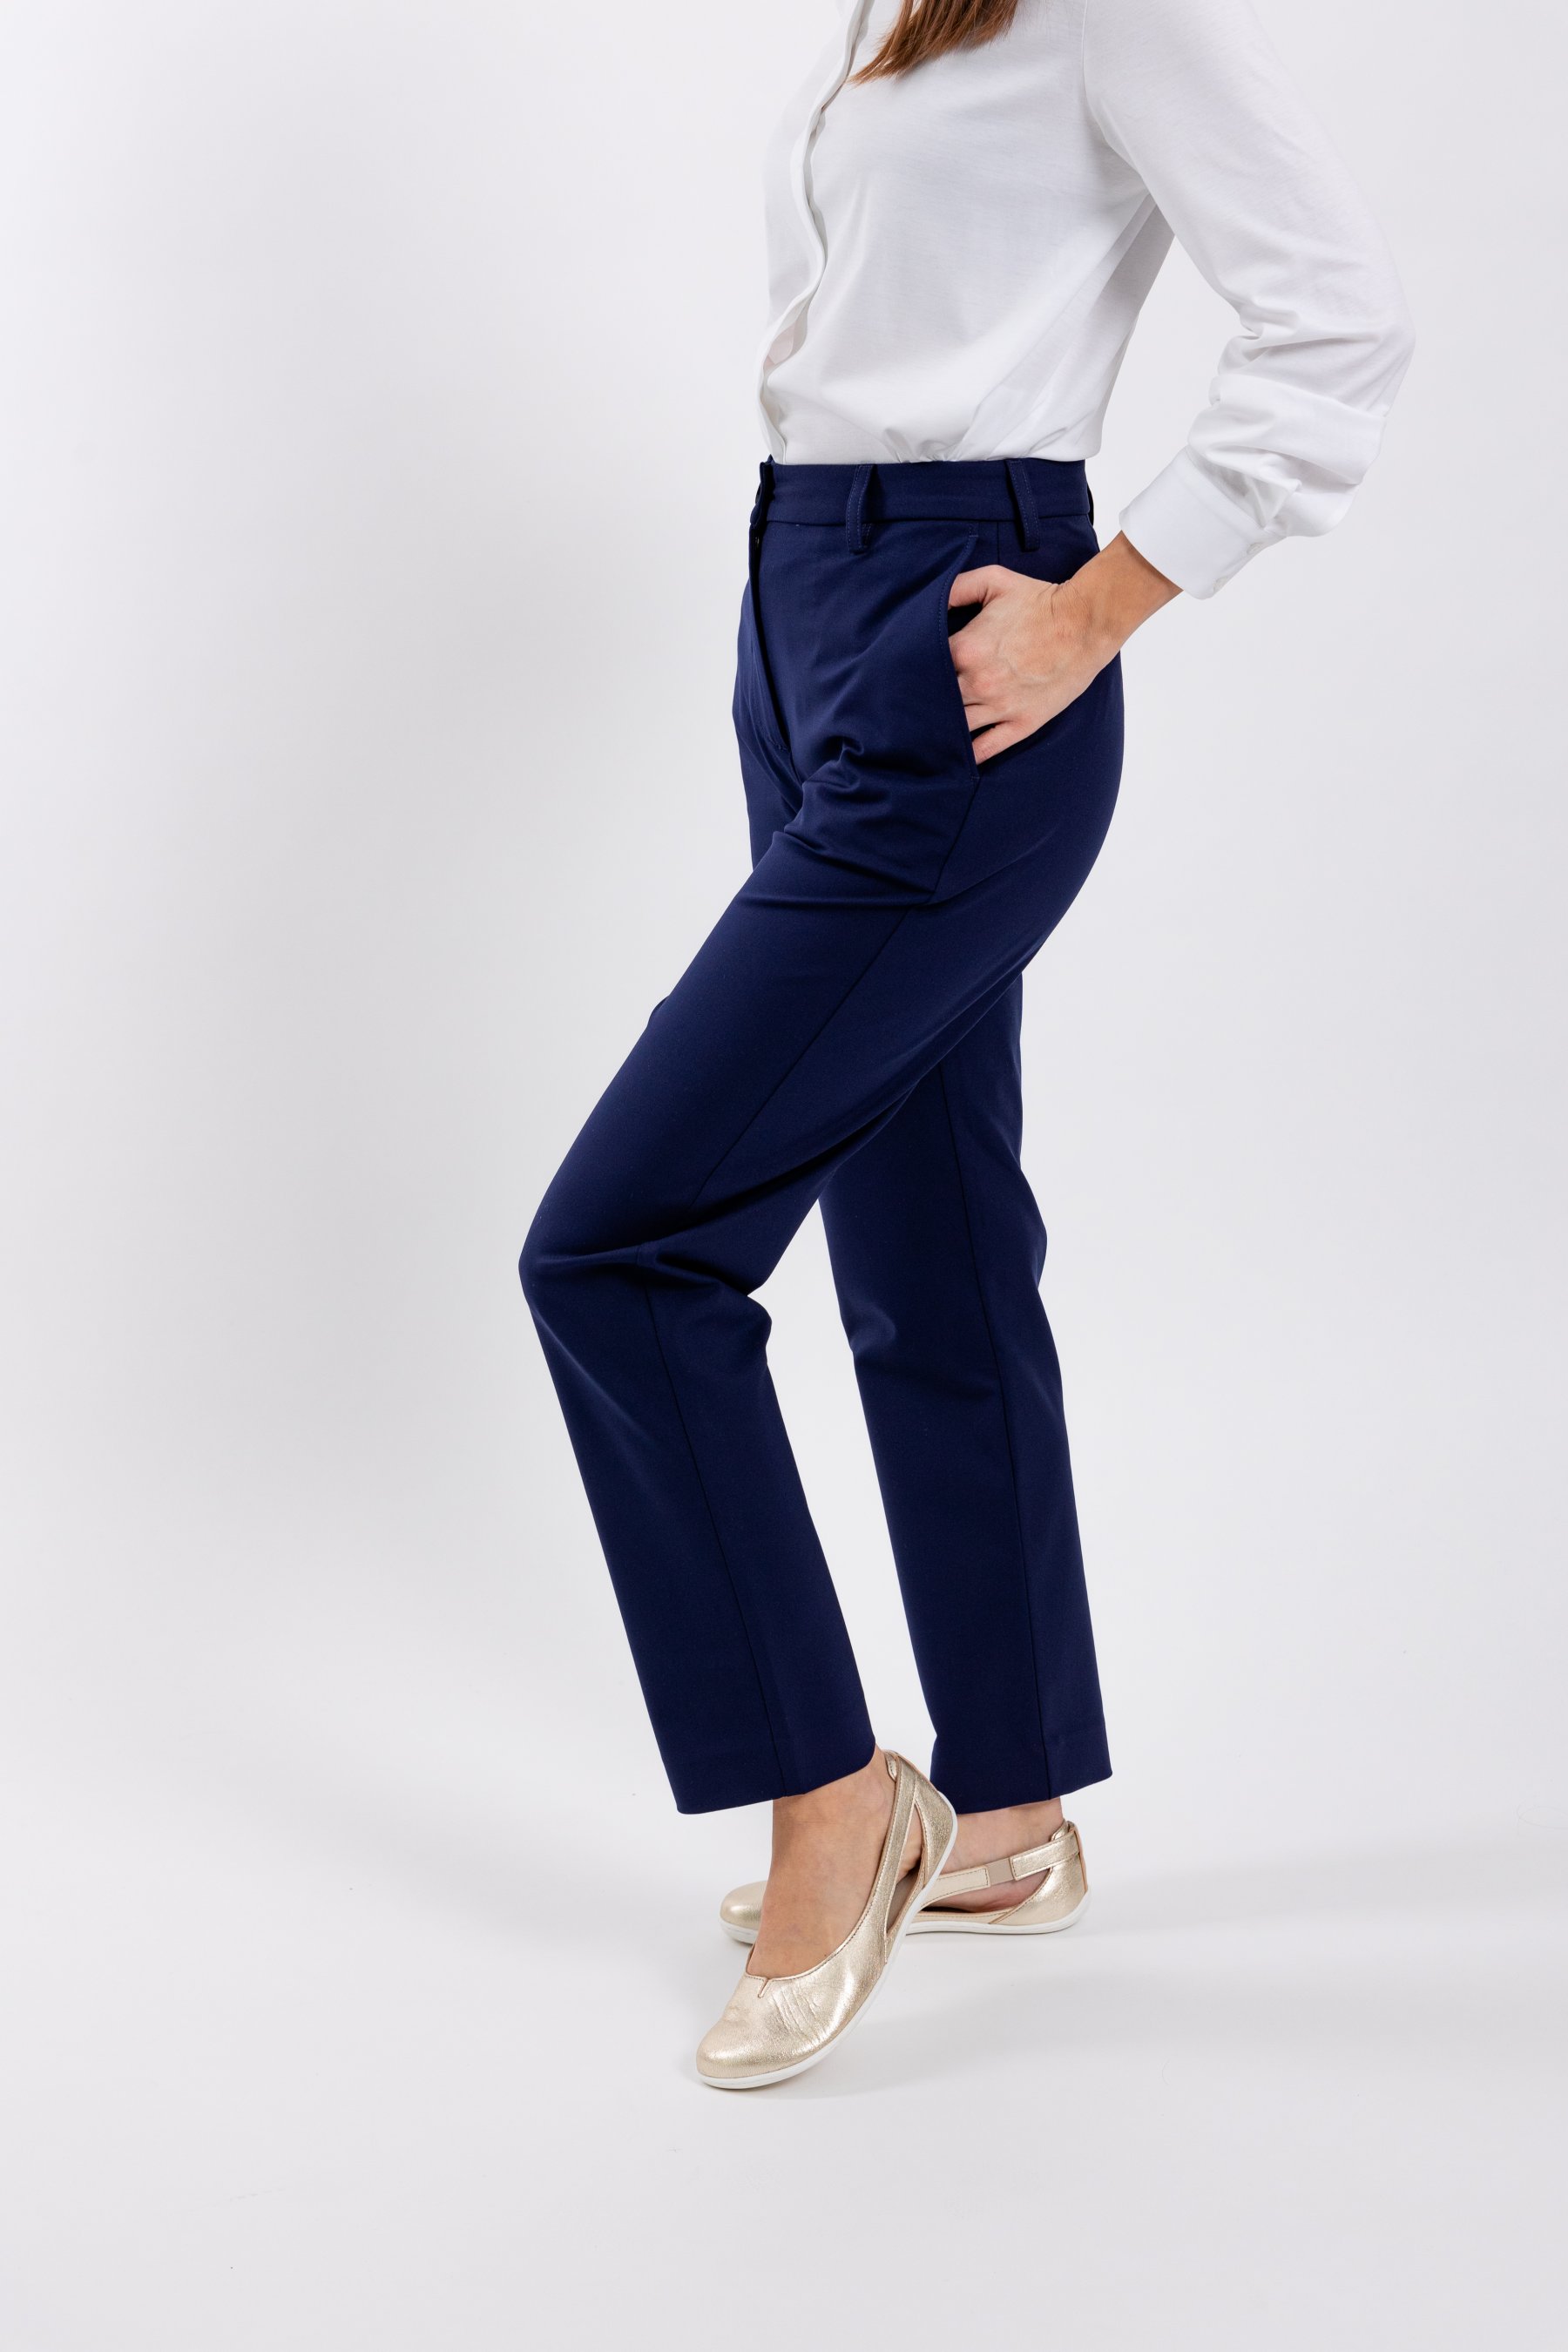 Women's Blue Pants | Kohl's-mncb.edu.vn